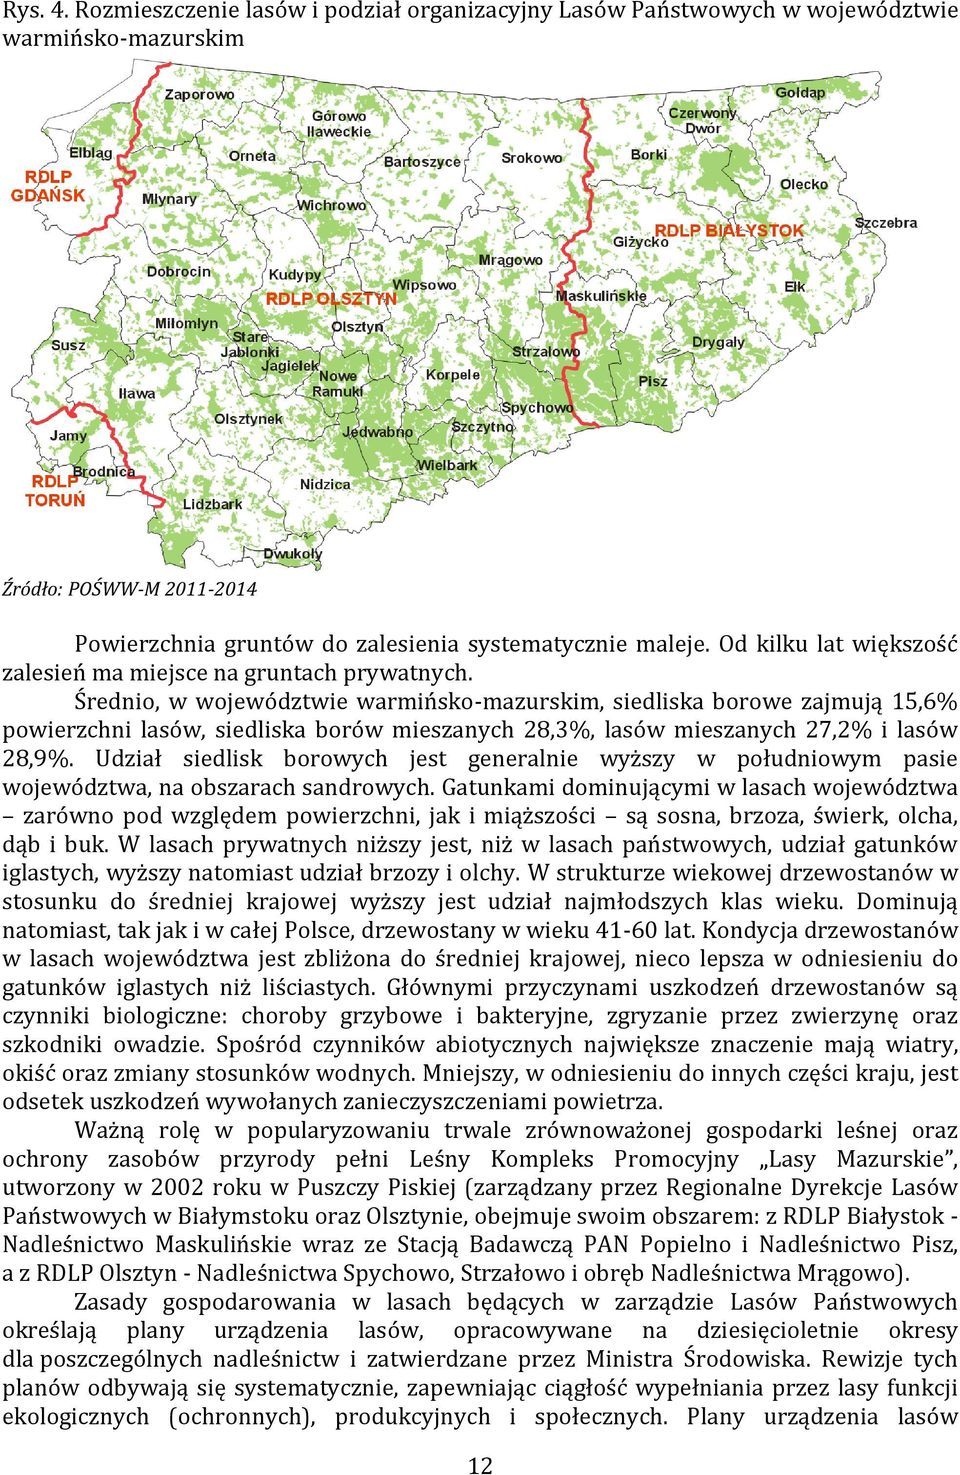 Średnio, w województwie warmińsko-mazurskim, siedliska borowe zajmują 15,6% powierzchni lasów, siedliska borów mieszanych 28,3%, lasów mieszanych 27,2% i lasów 28,9%.